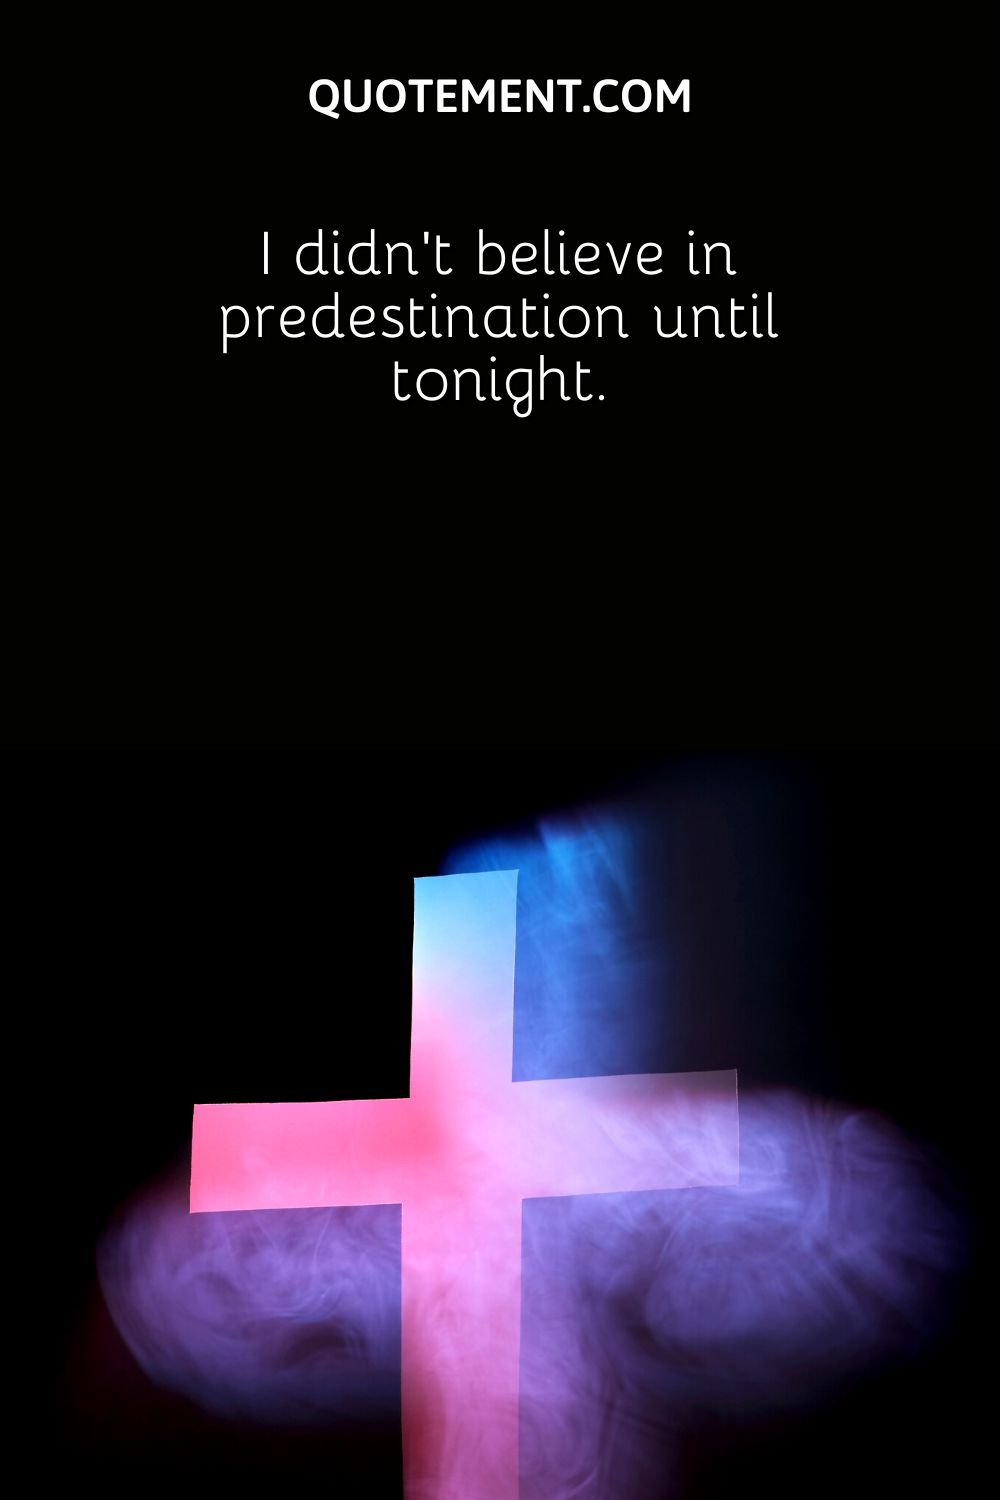 I didn’t believe in predestination until tonight